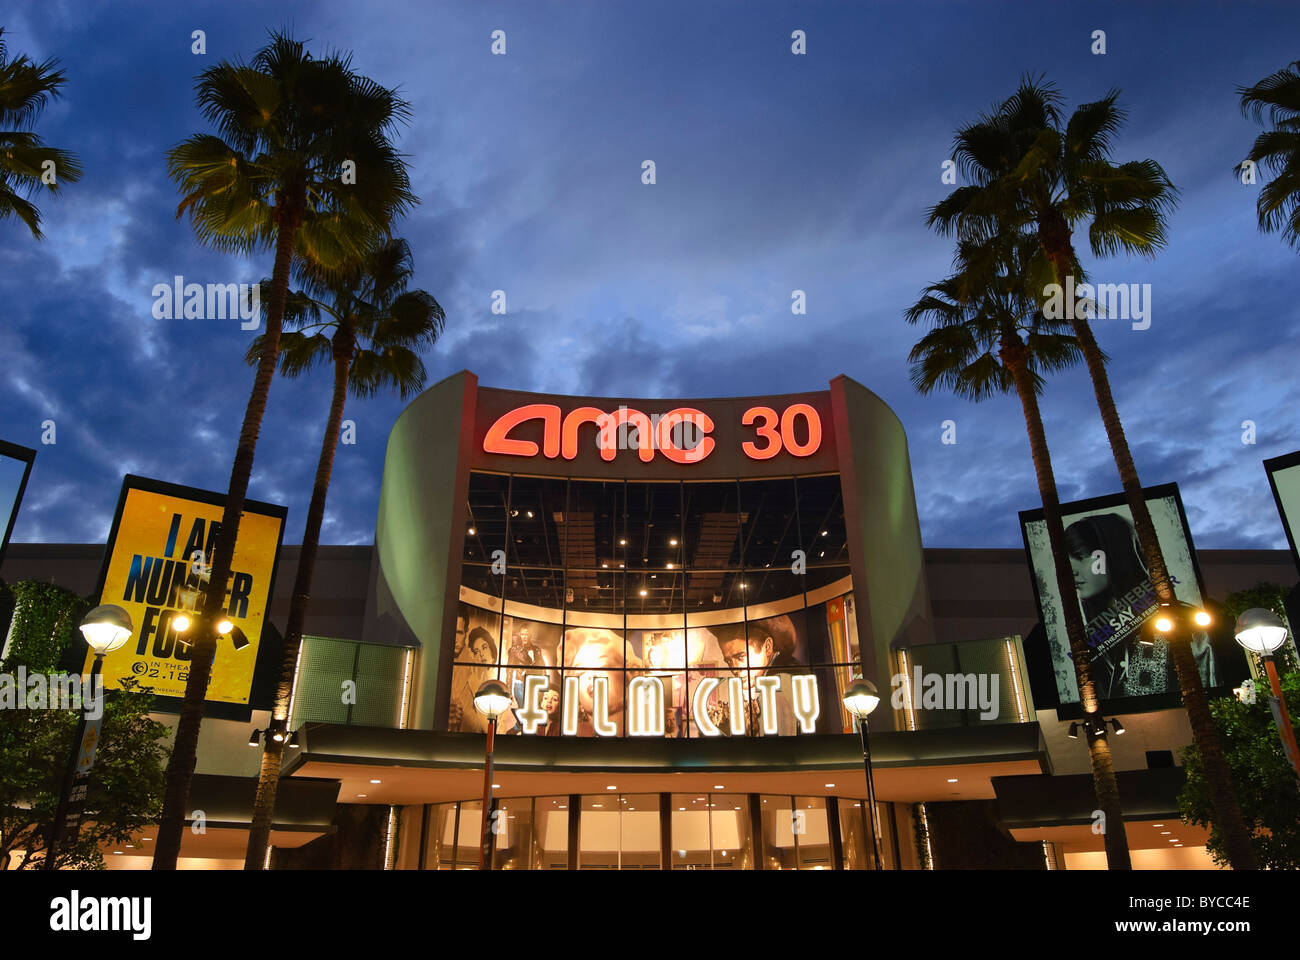 AMC cinemas at the Block in Orange, California. Stock Photo